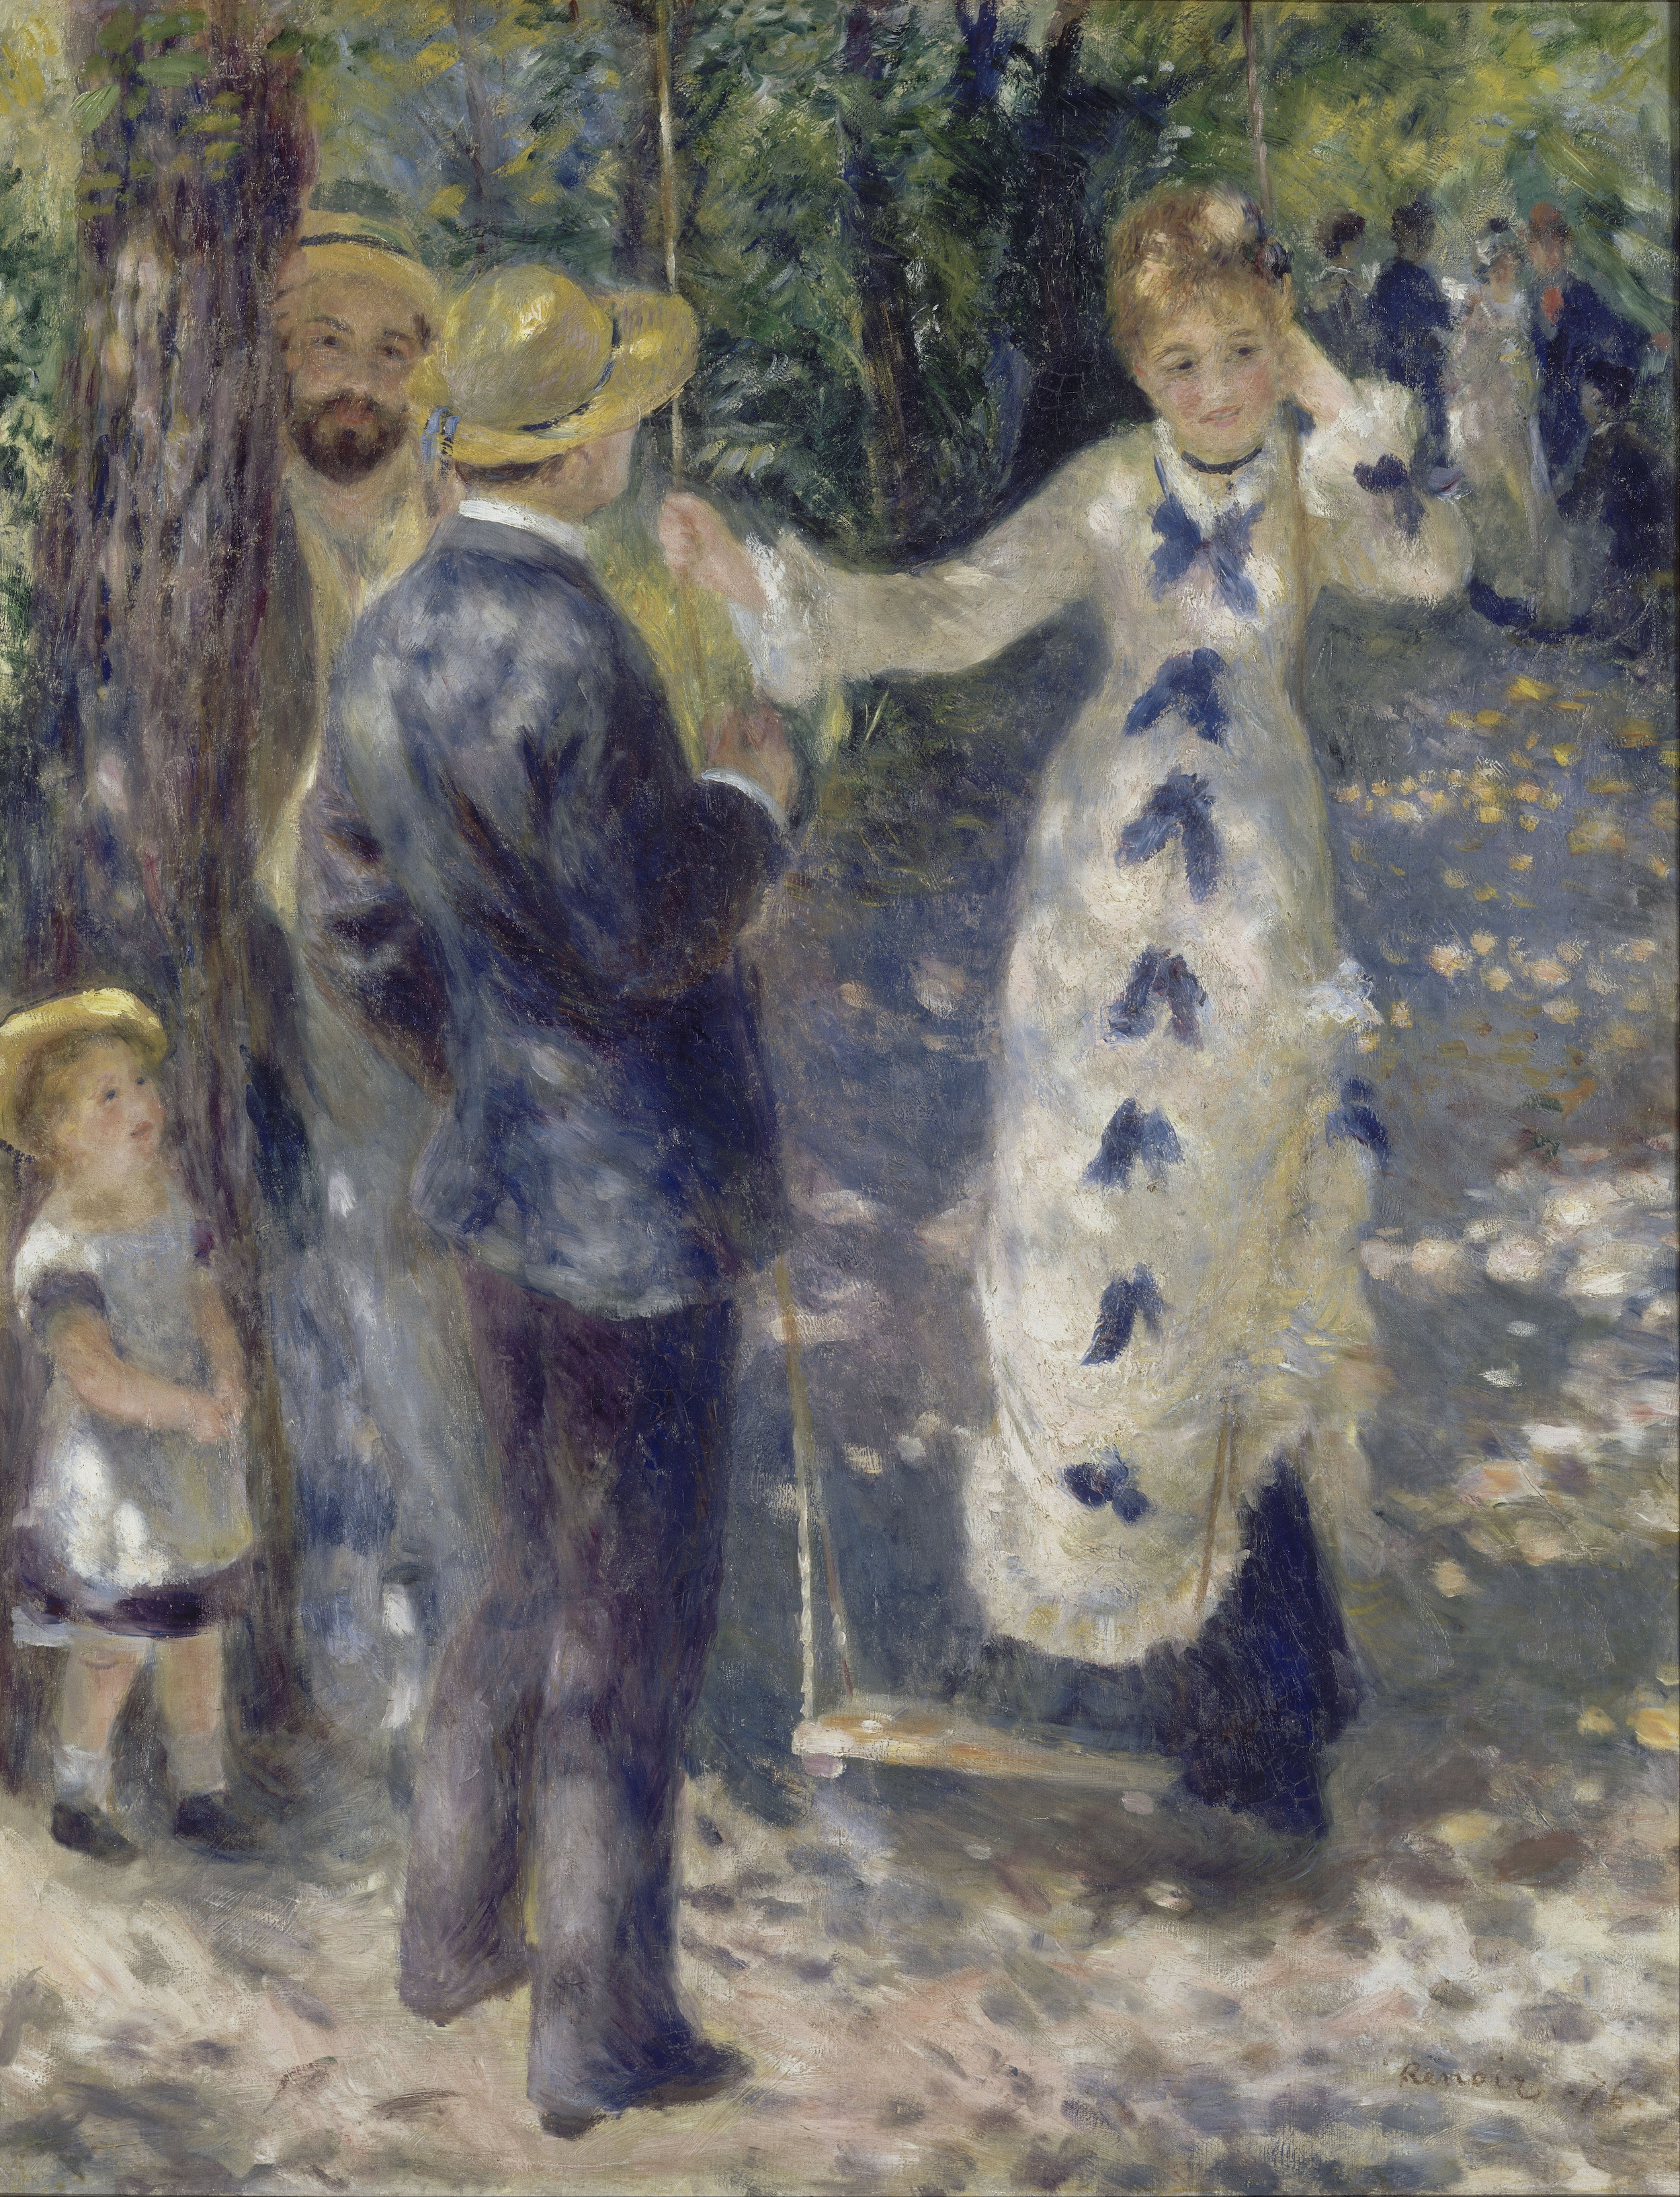 L'altalena by Pierre-Auguste Renoir - 1876 - 92 x 73 cm Musée d'Orsay